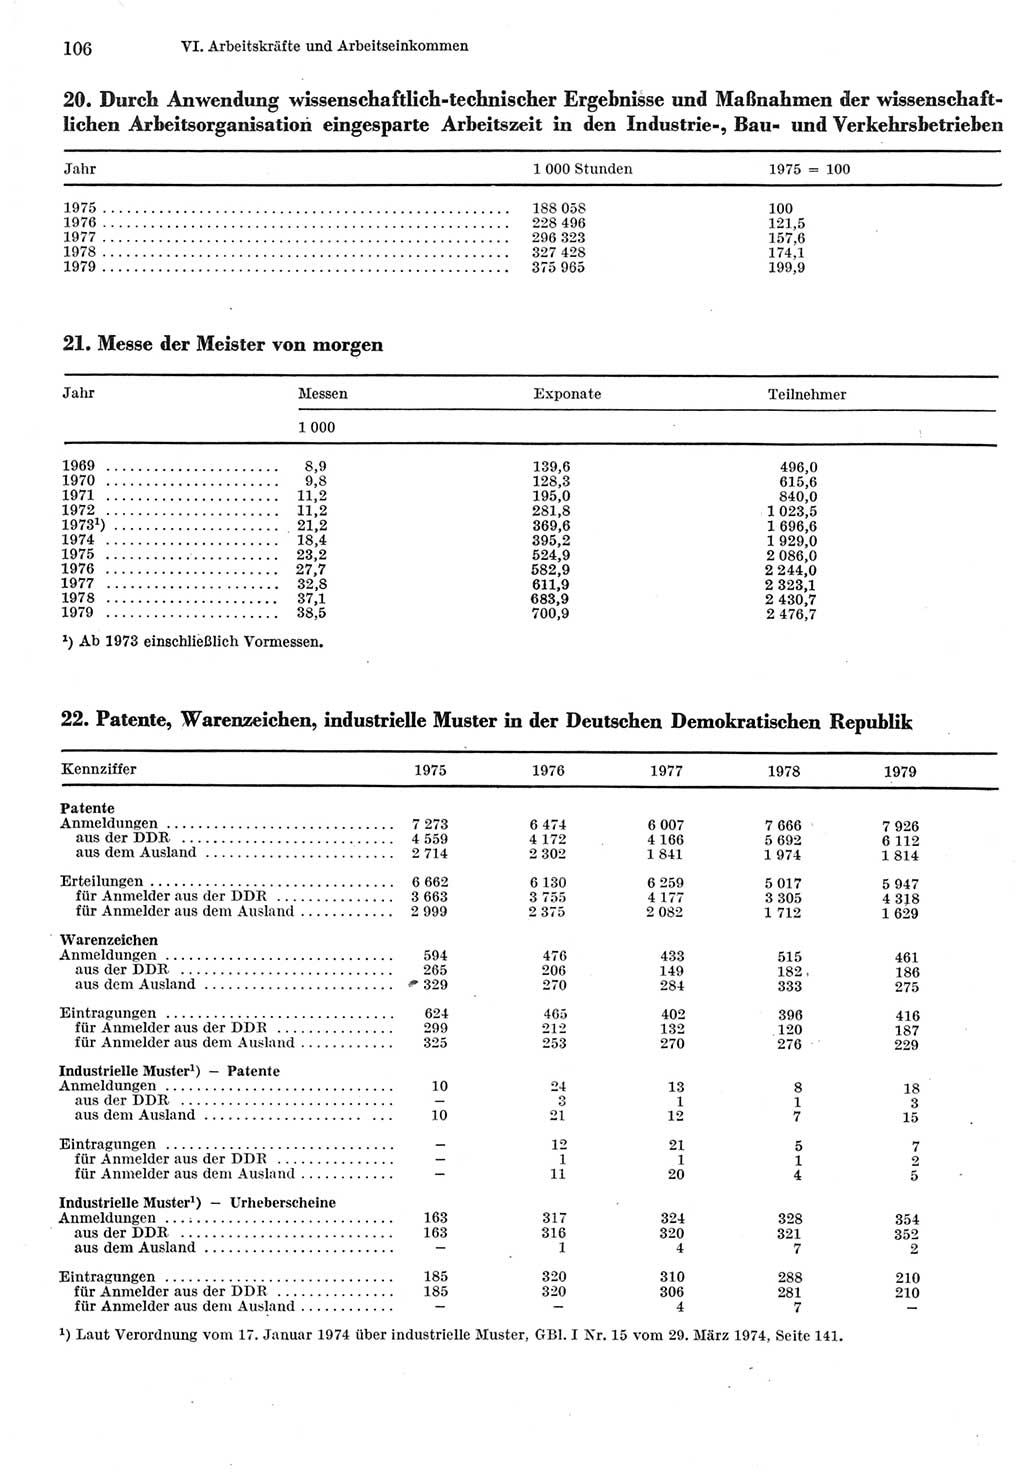 Statistisches Jahrbuch der Deutschen Demokratischen Republik (DDR) 1980, Seite 106 (Stat. Jb. DDR 1980, S. 106)